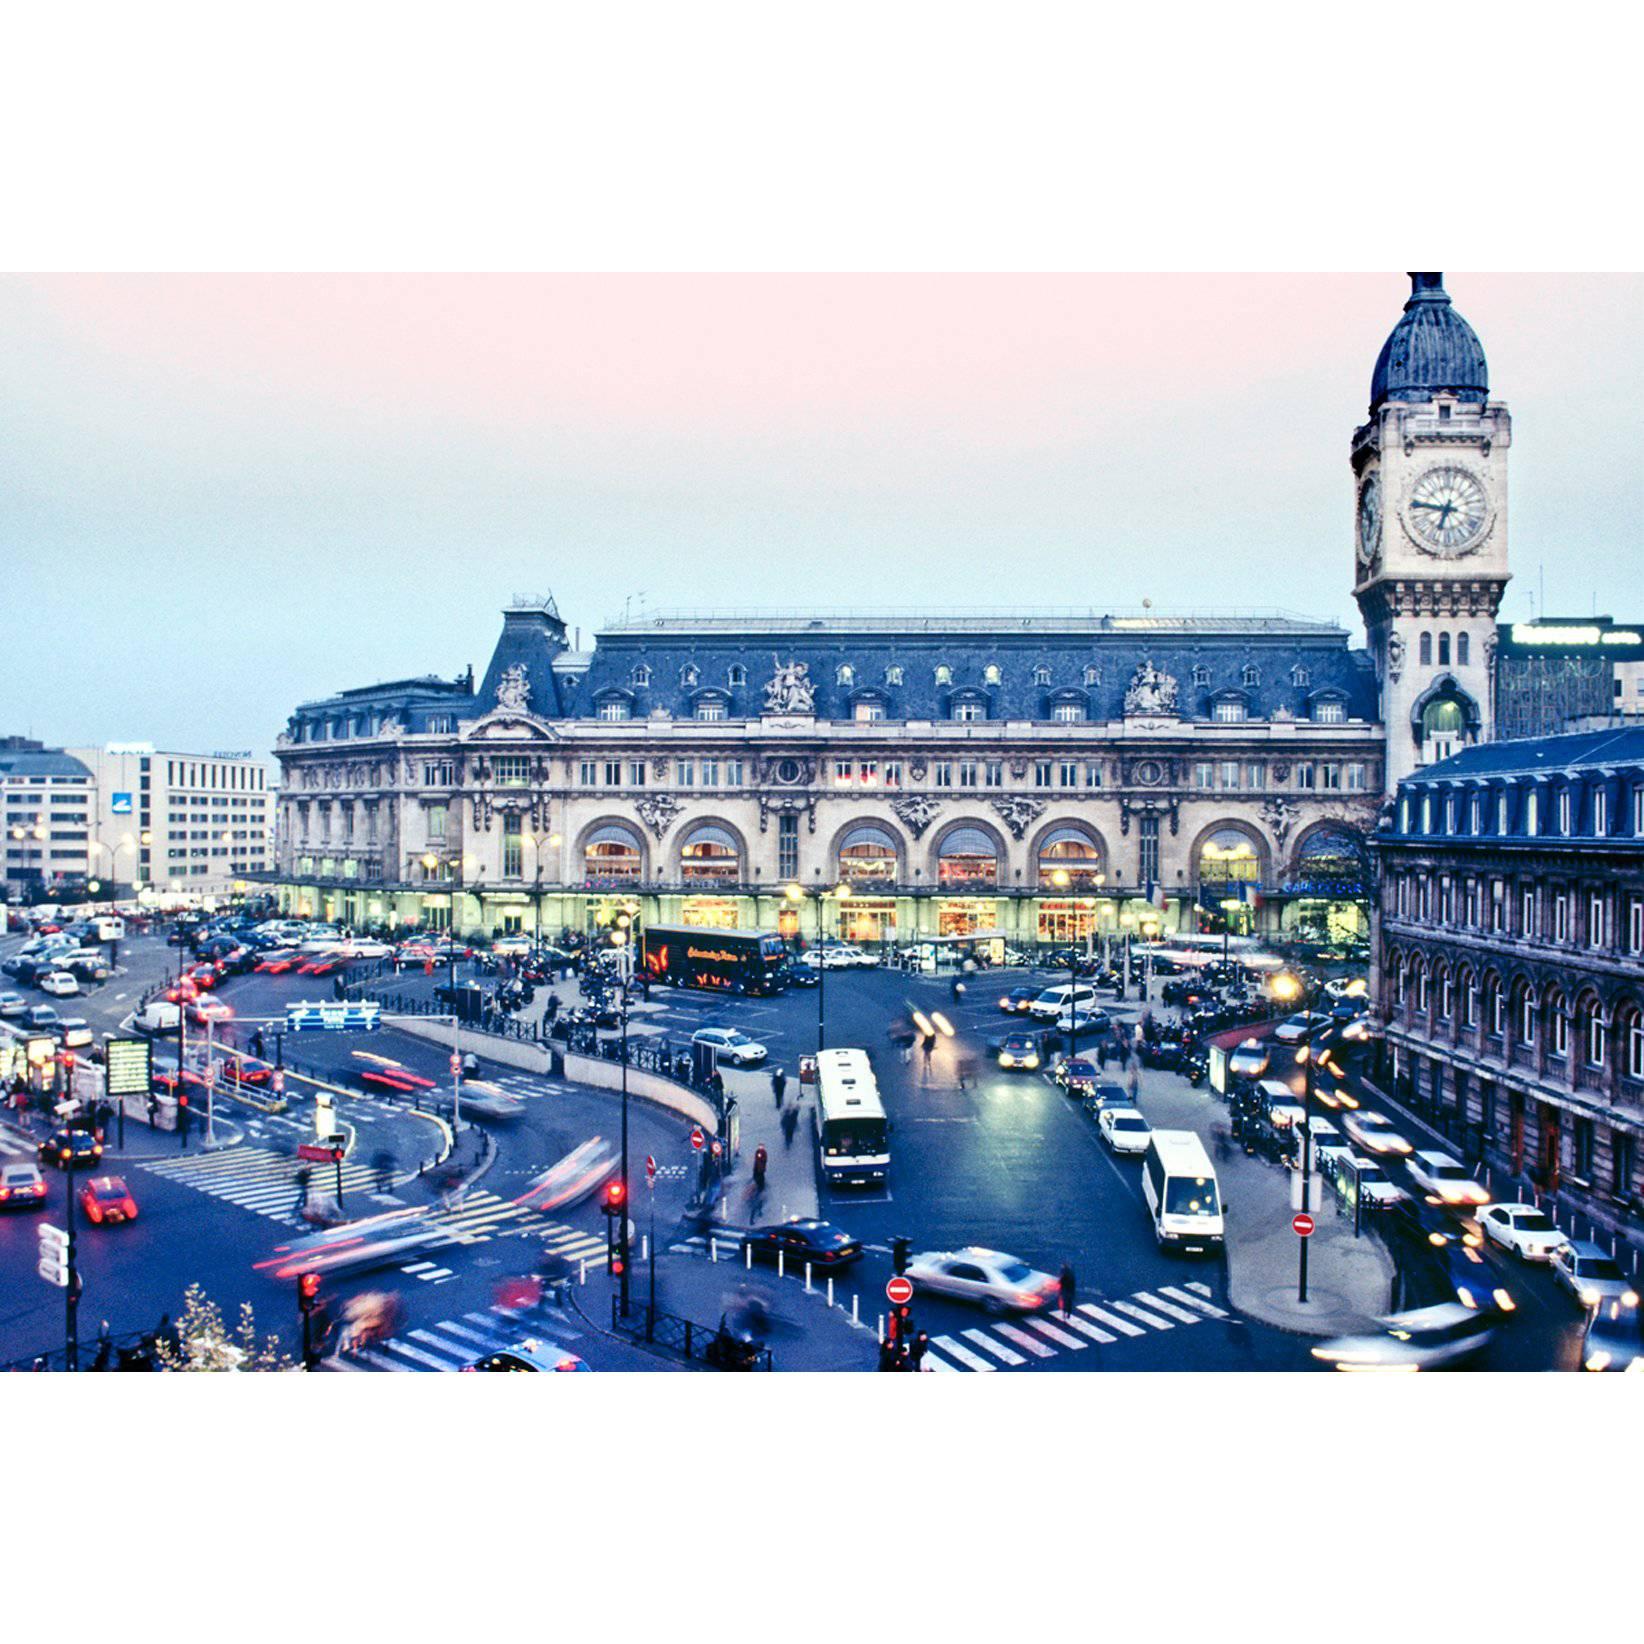 Gare De Lyon, Place Louis-Armand, Paris Color Photography by Gregg Felsen For Sale